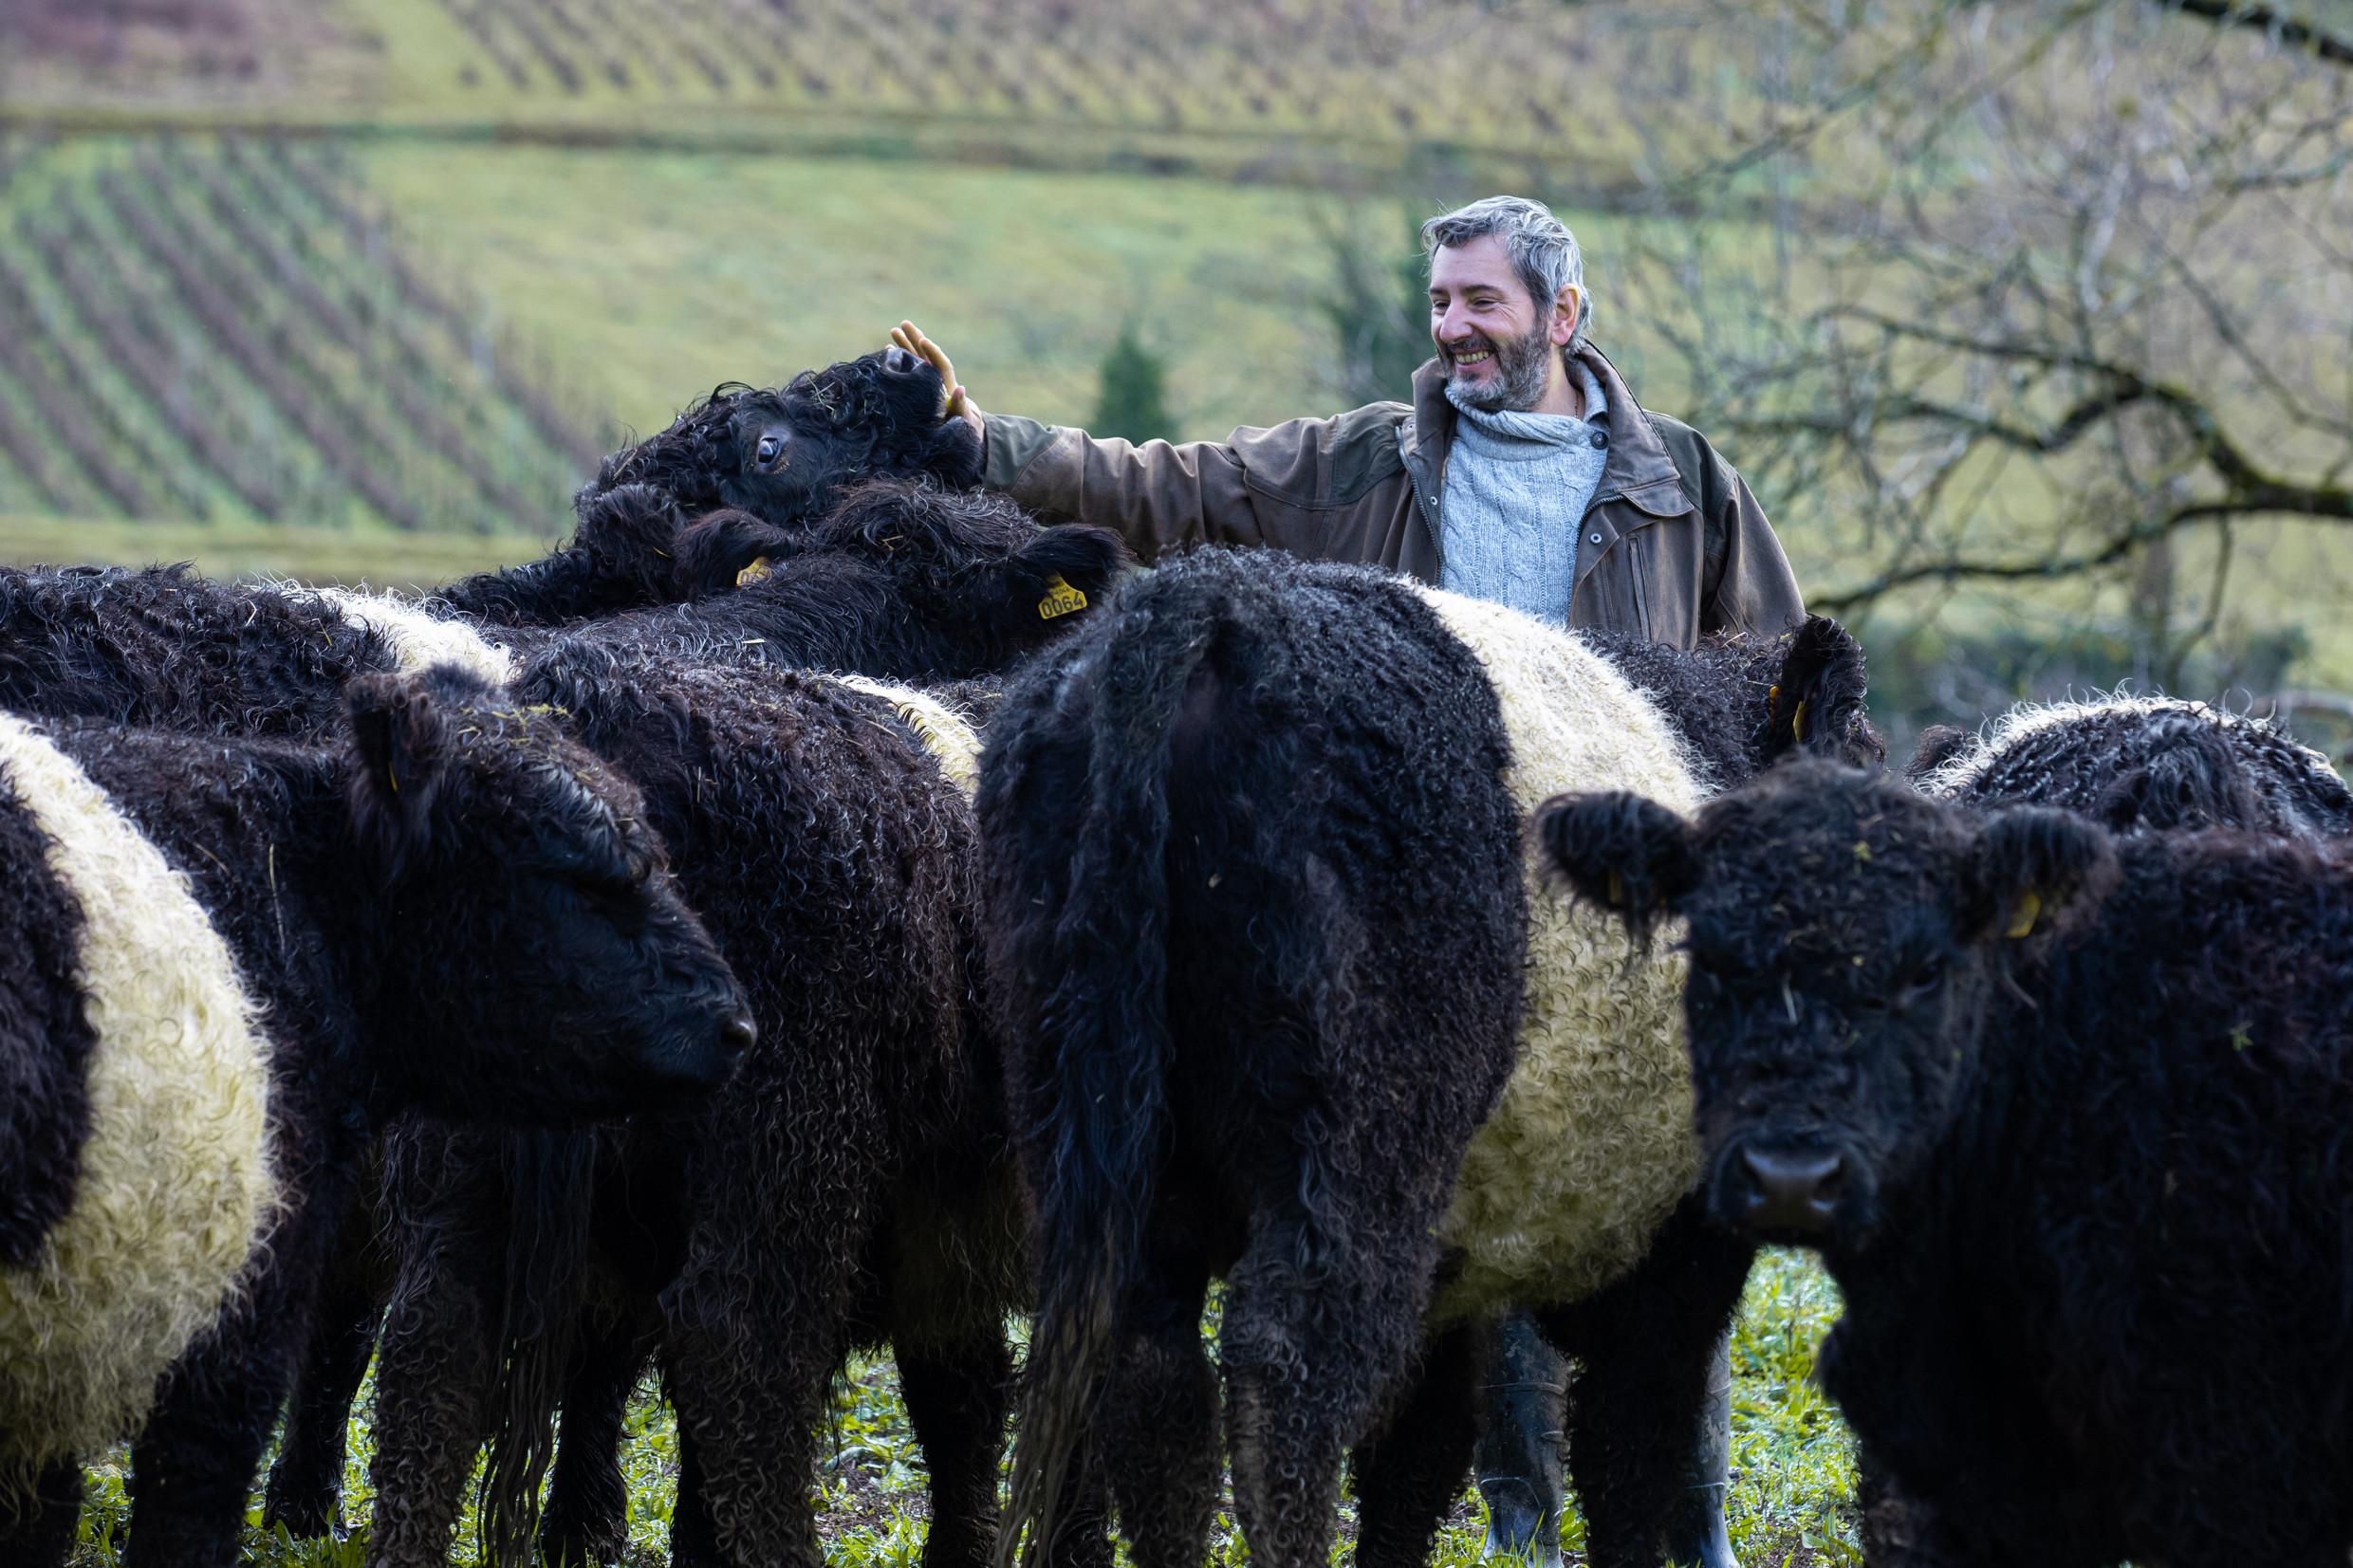 Elevage de vaches de race Galloway, chez Emmanuel Rizzi à Domblans (39) - Photo © Xavier Ducordeaux